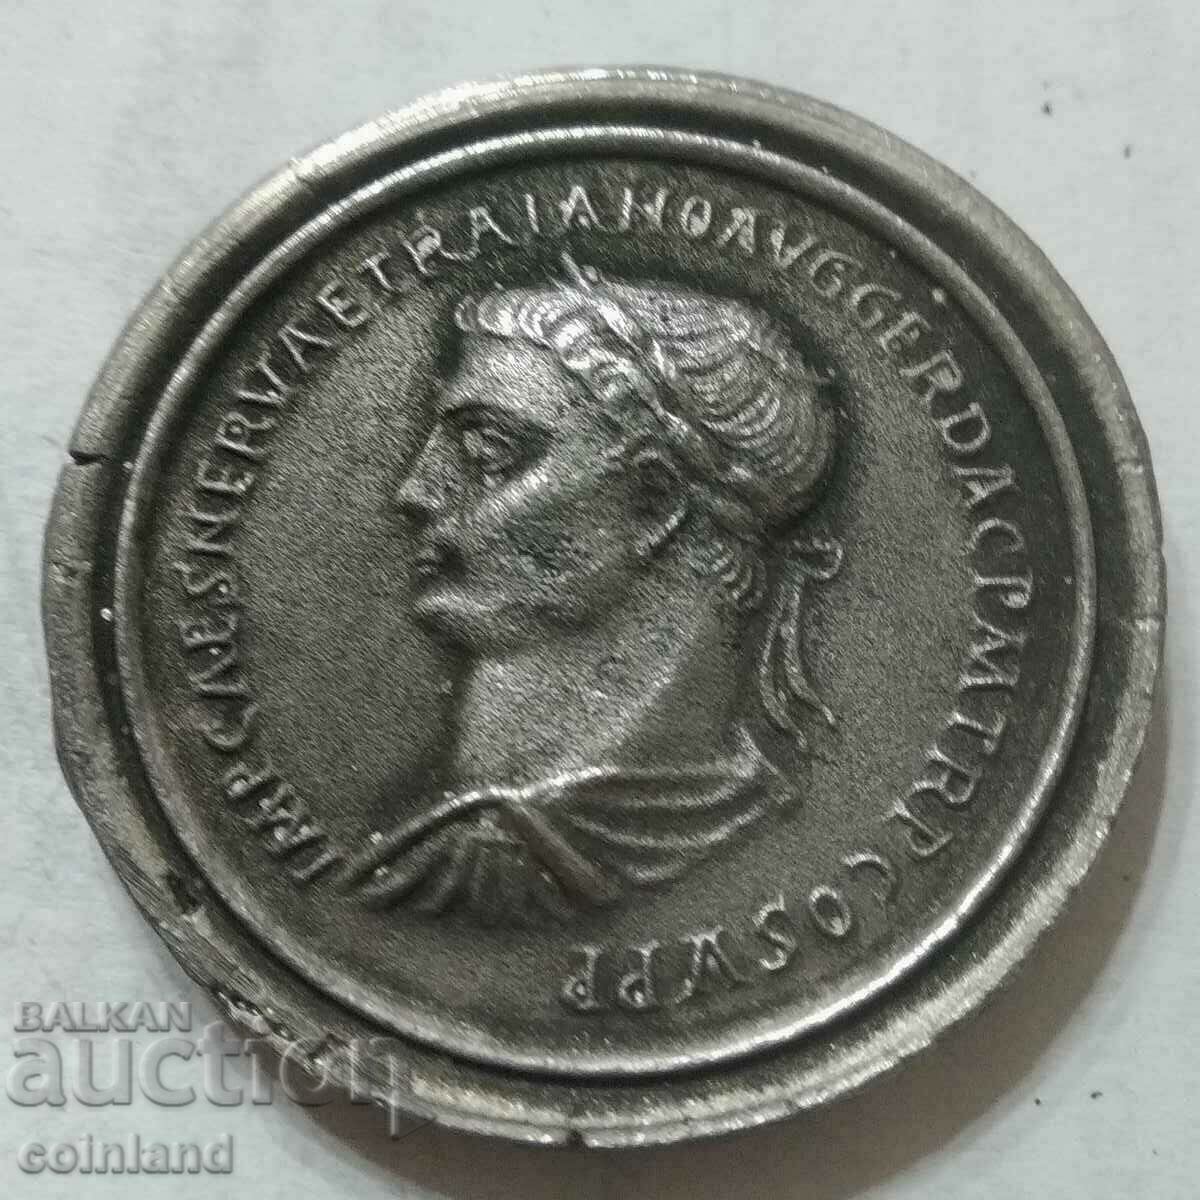 Ρωμαϊκό Μετάλλιο - ΑΝΑΠΑΡΑΓΩΓΗ ΡΕΠΛΙΚΩΝ